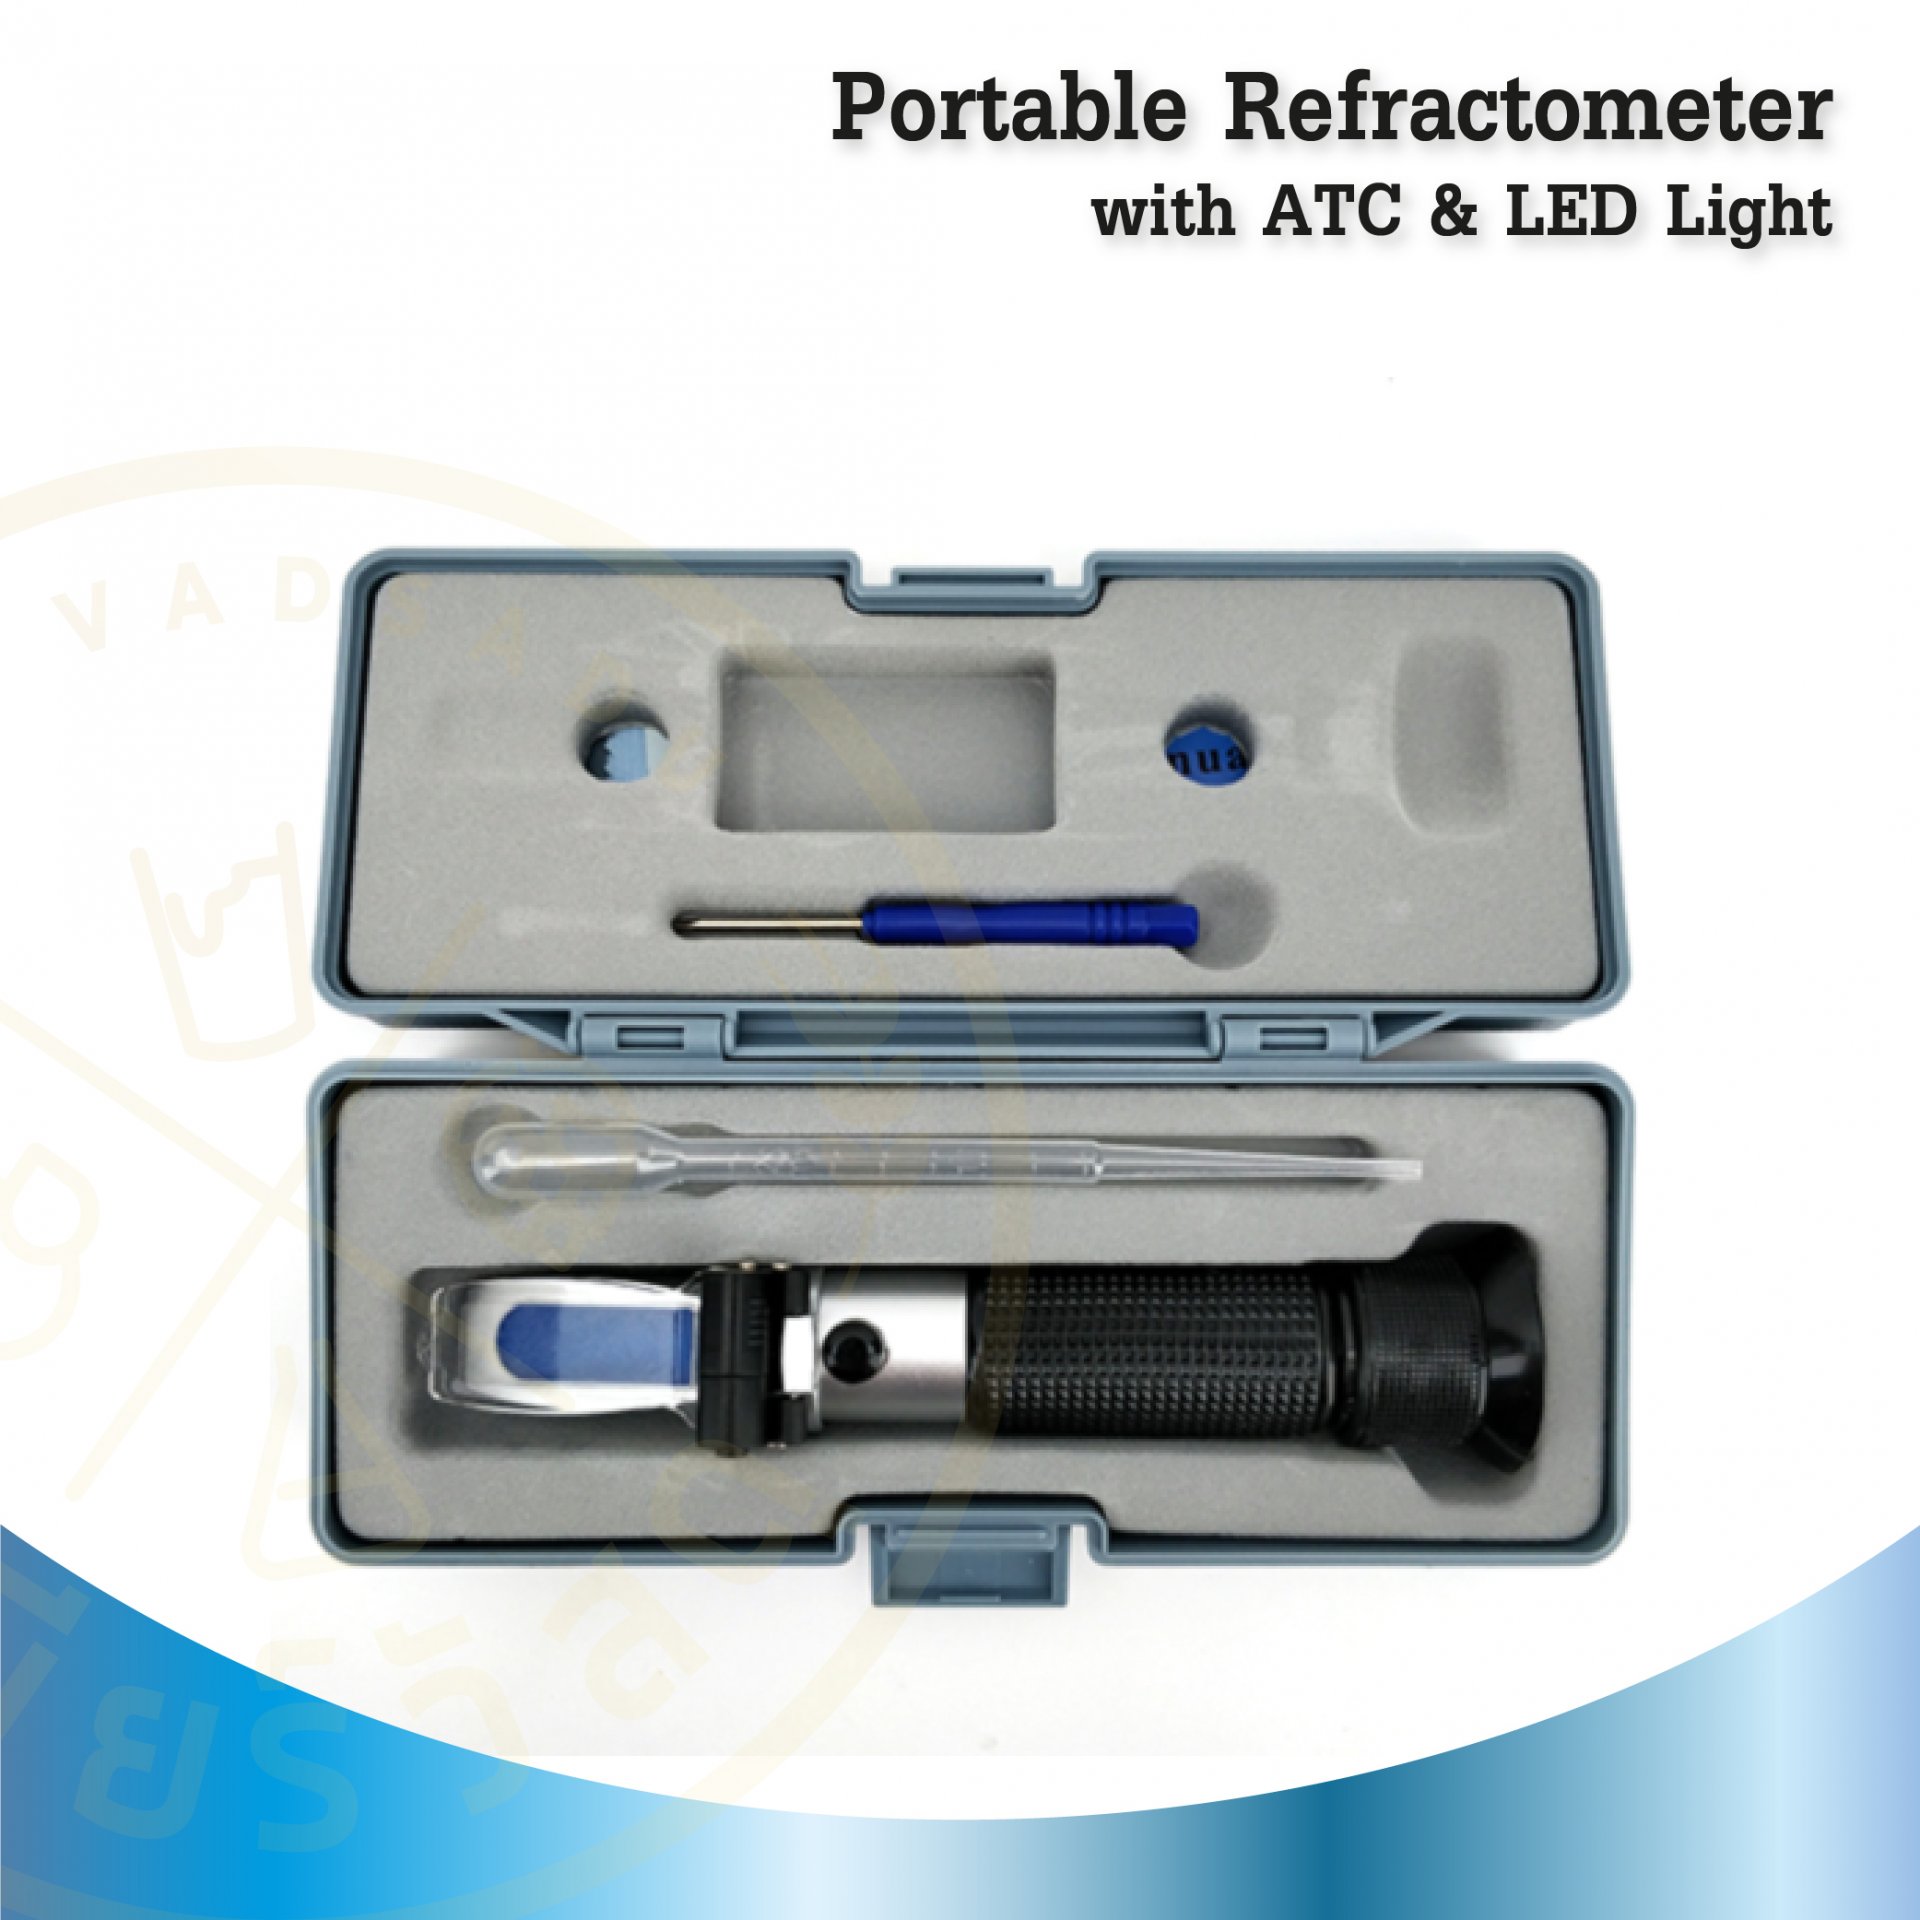 รีแฟลคโตเมเตอร์ Portable Refractometer with ATC & LED Light